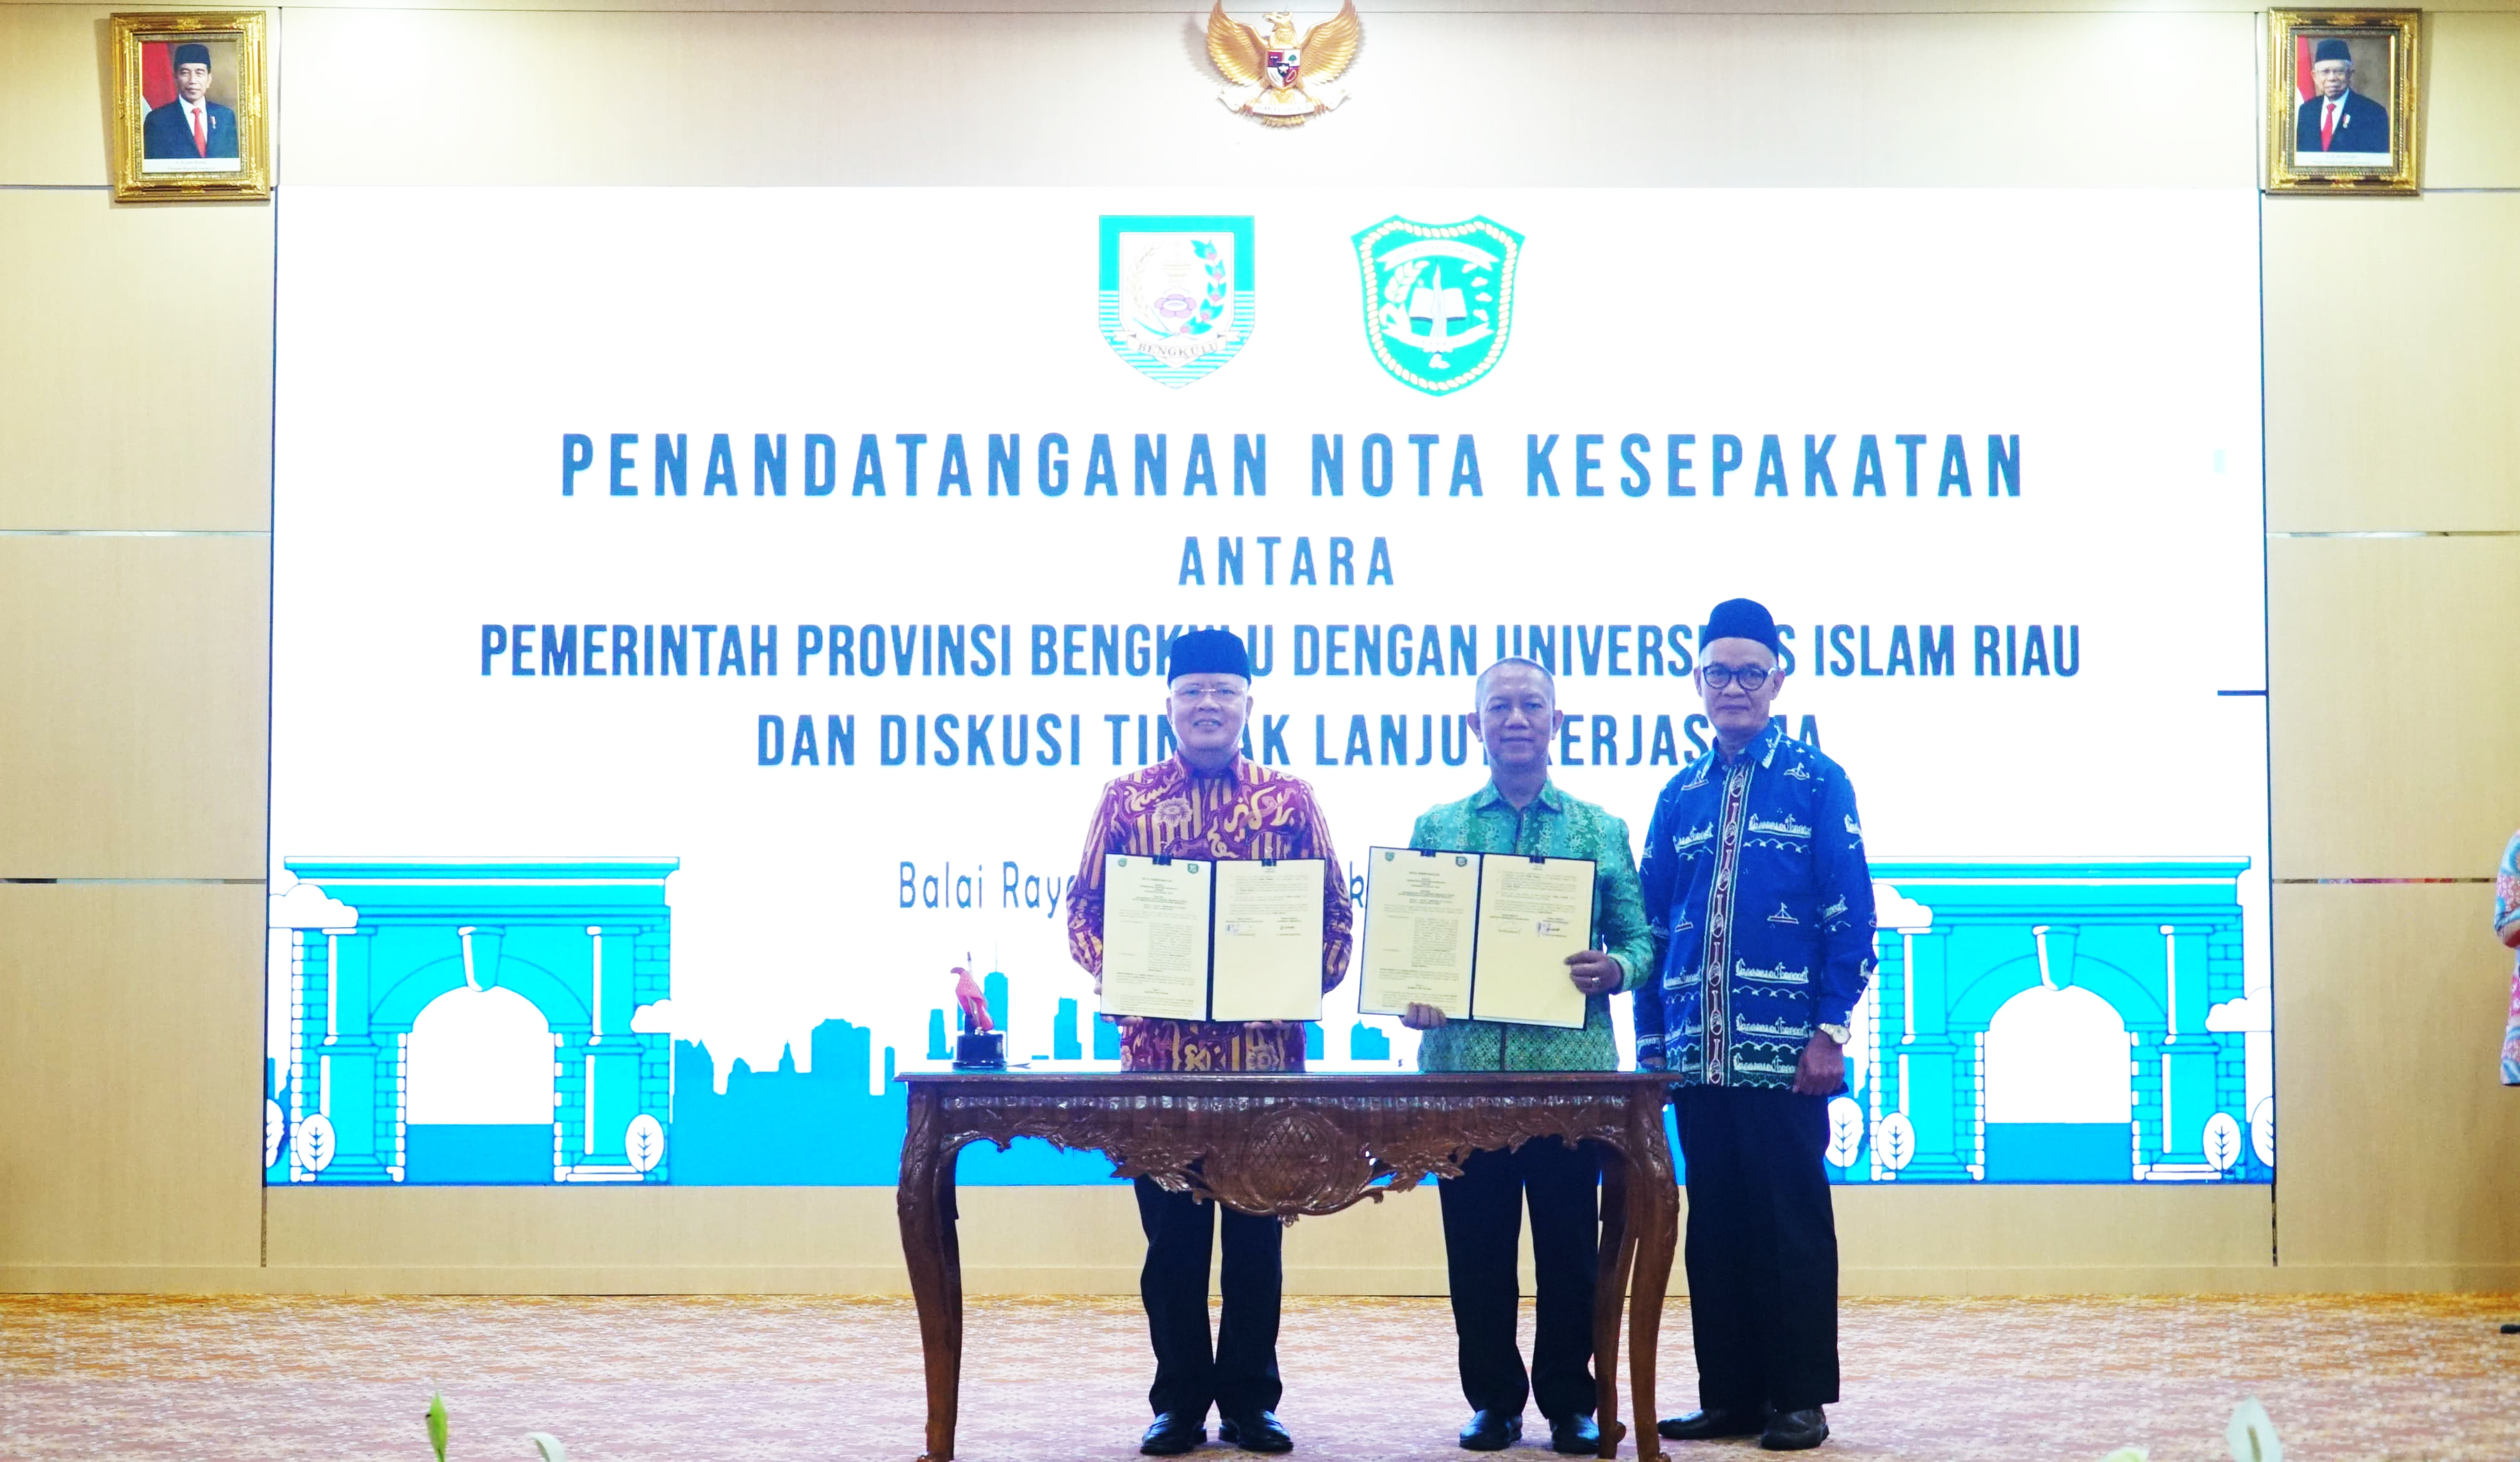  Provinsi Bengkulu Tertarik dengan Studi Ilmu Teknik Perminyakan di Universitas Islam Riau